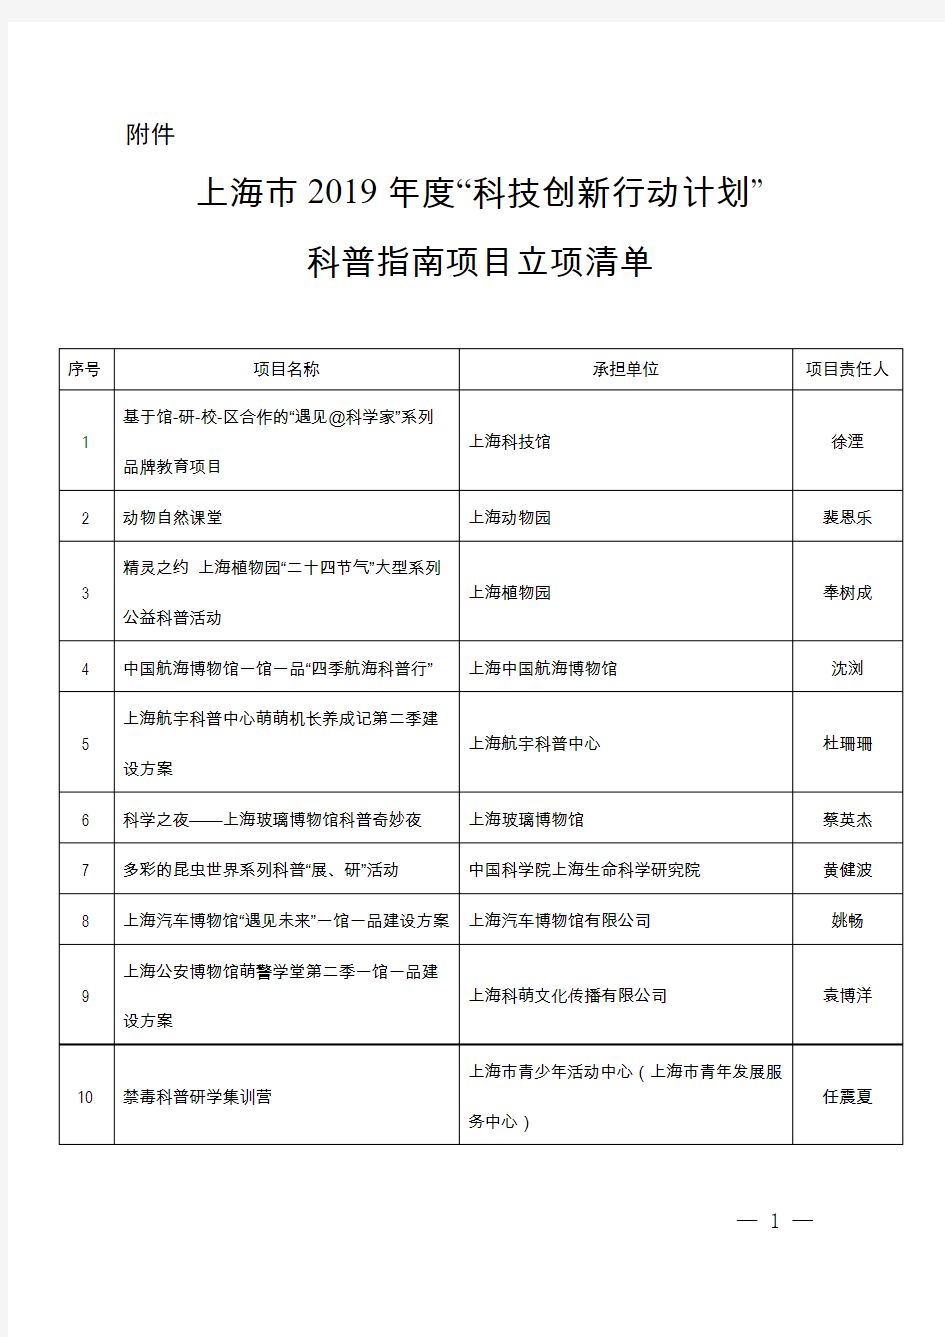 上海市2019年度科技创新行动计划科普指南项目立项清单